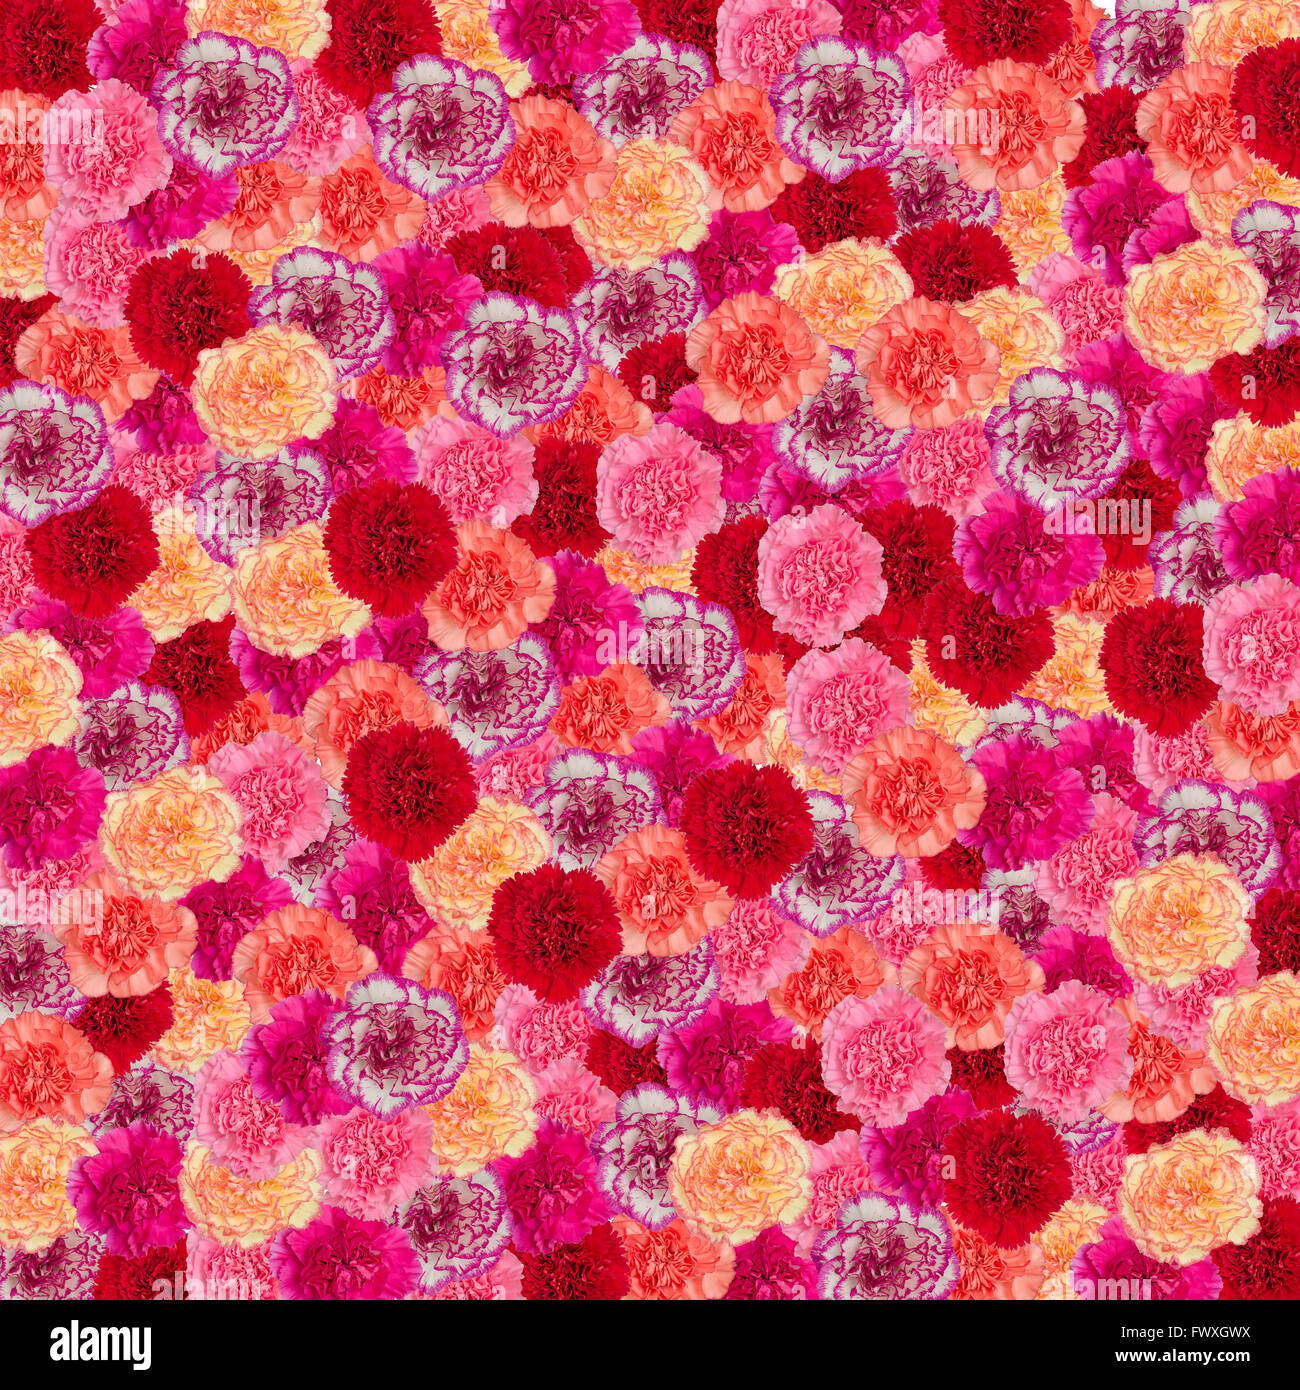 Carnation flower background Banque D'Images